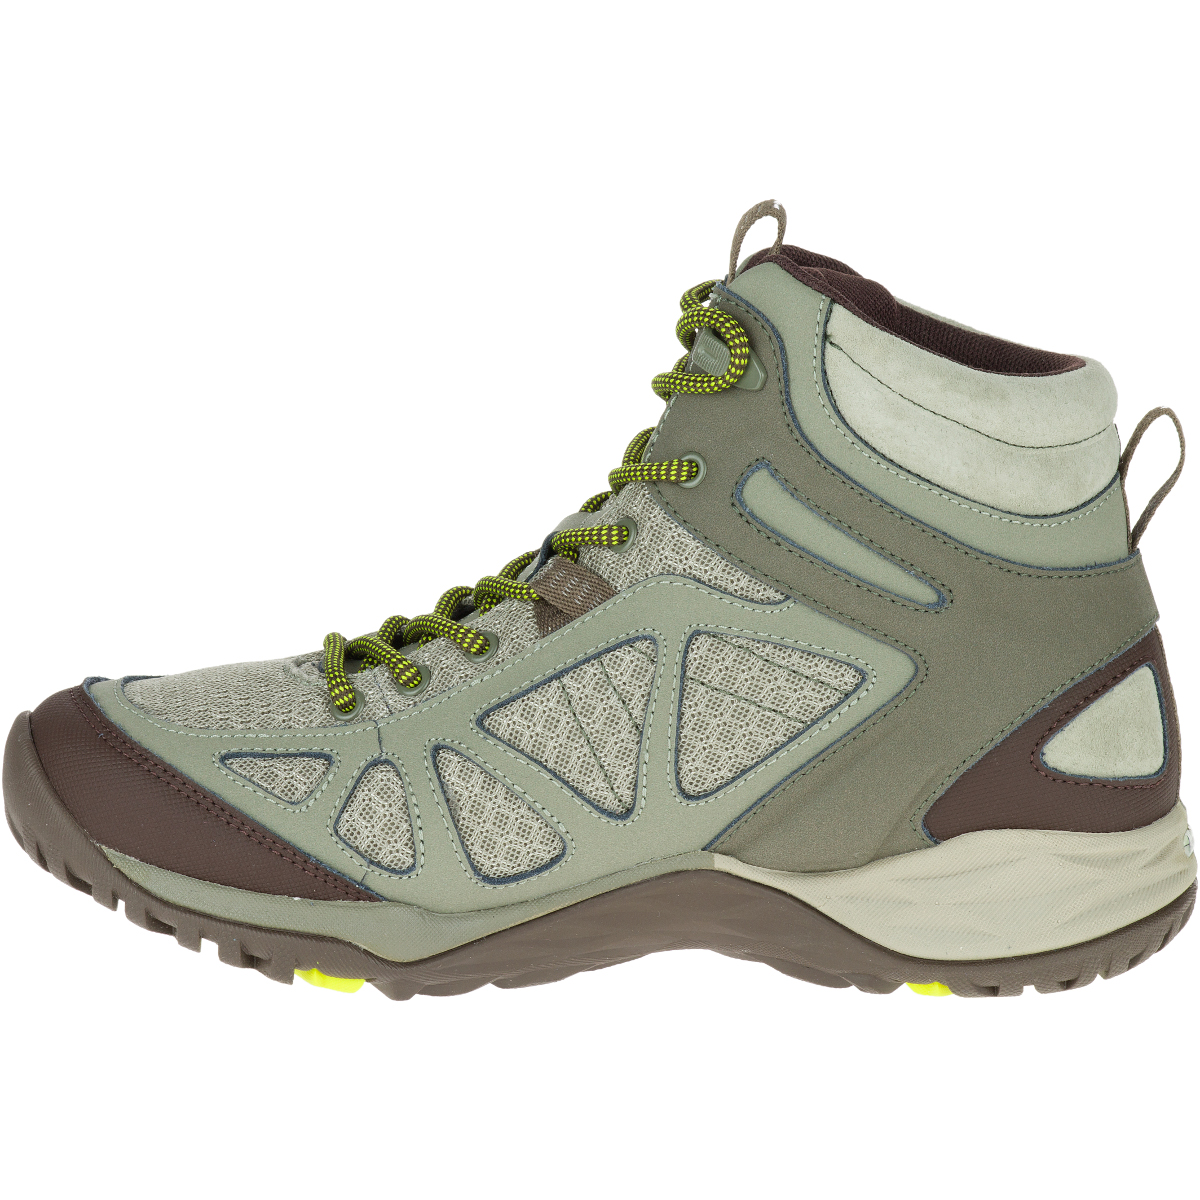 merrell women's siren sport q2 mid waterproof hiking boot